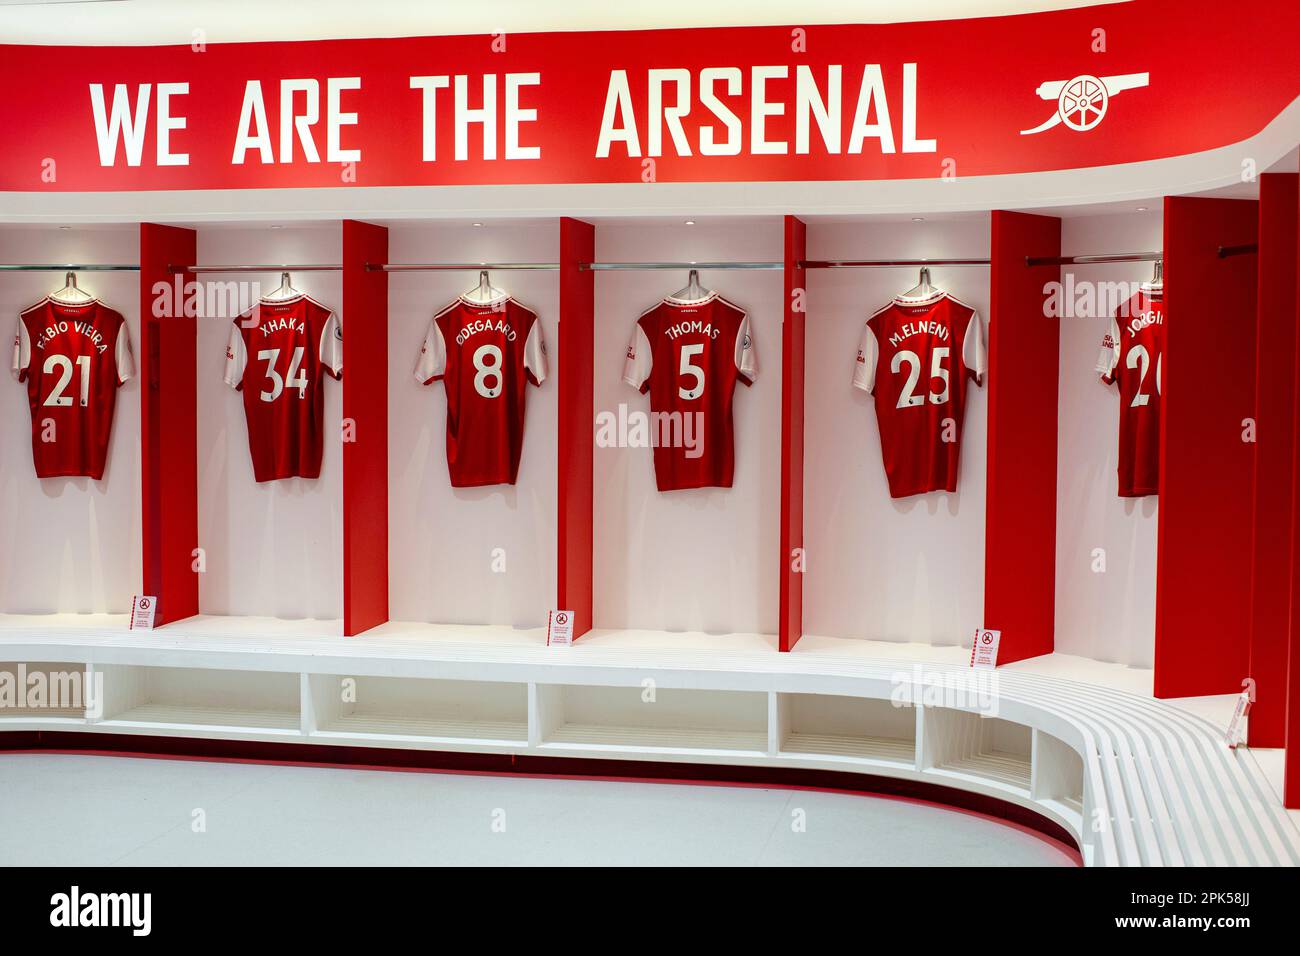 HIGHBURY, LONDRES, ANGLETERRE - visite du stade de football Arsenal Emirates à Londres, Royaume-Uni Banque D'Images